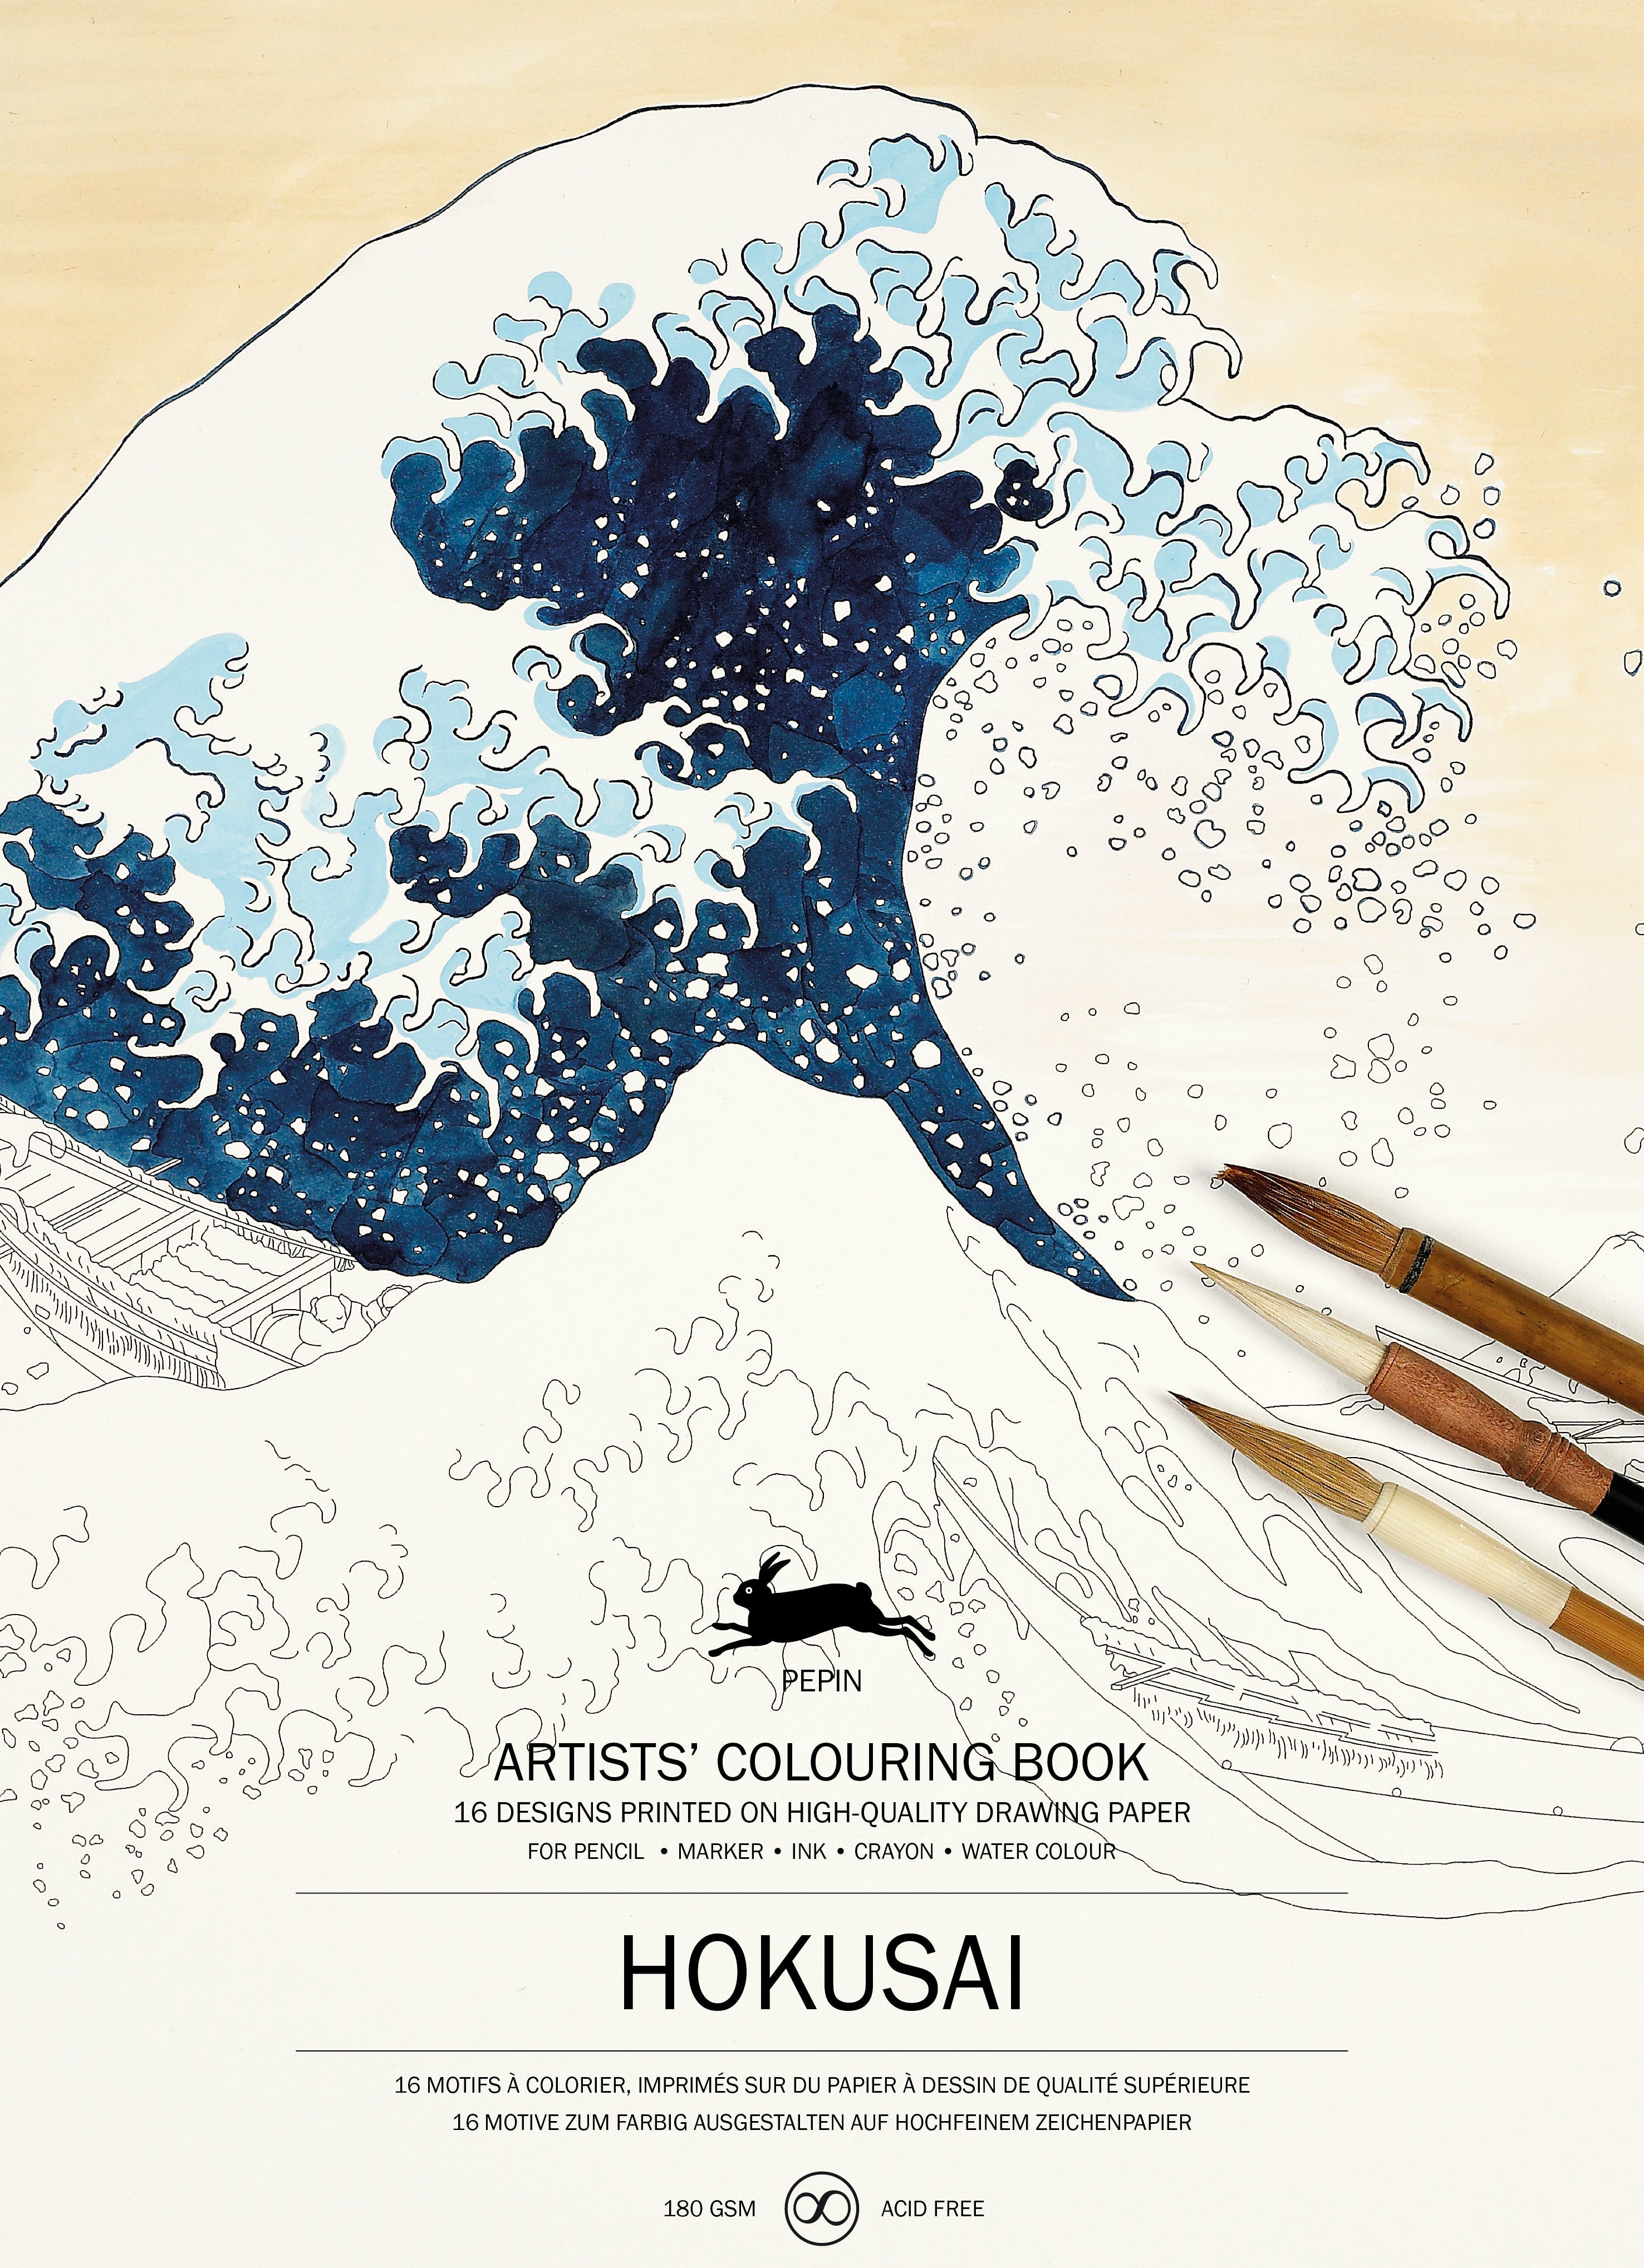 Artists’ Colouring Book - Hokusai